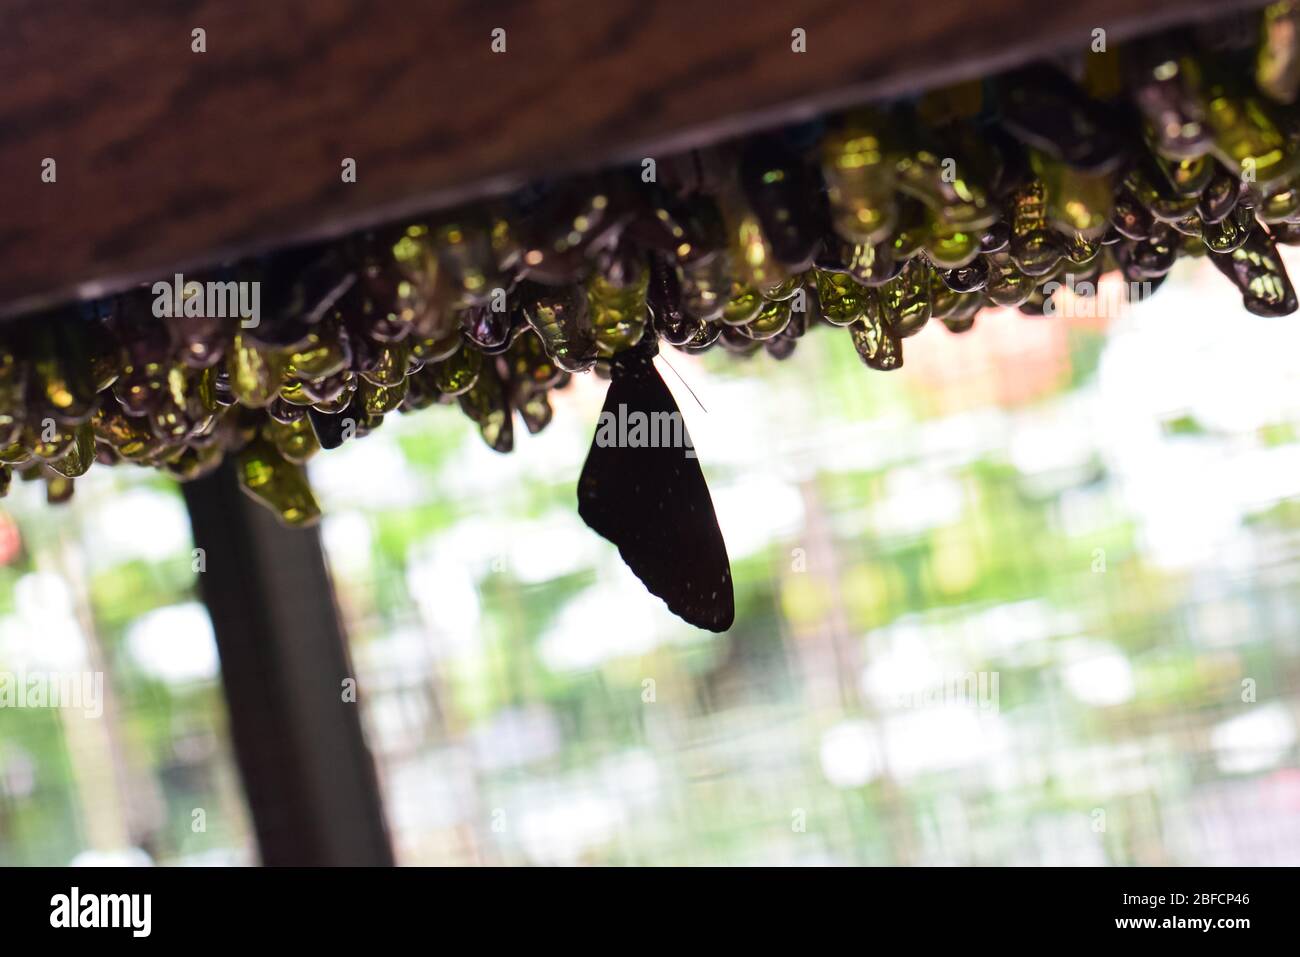 Mariposas recién nacidas en el jardín de mariposas de Bali Foto de stock